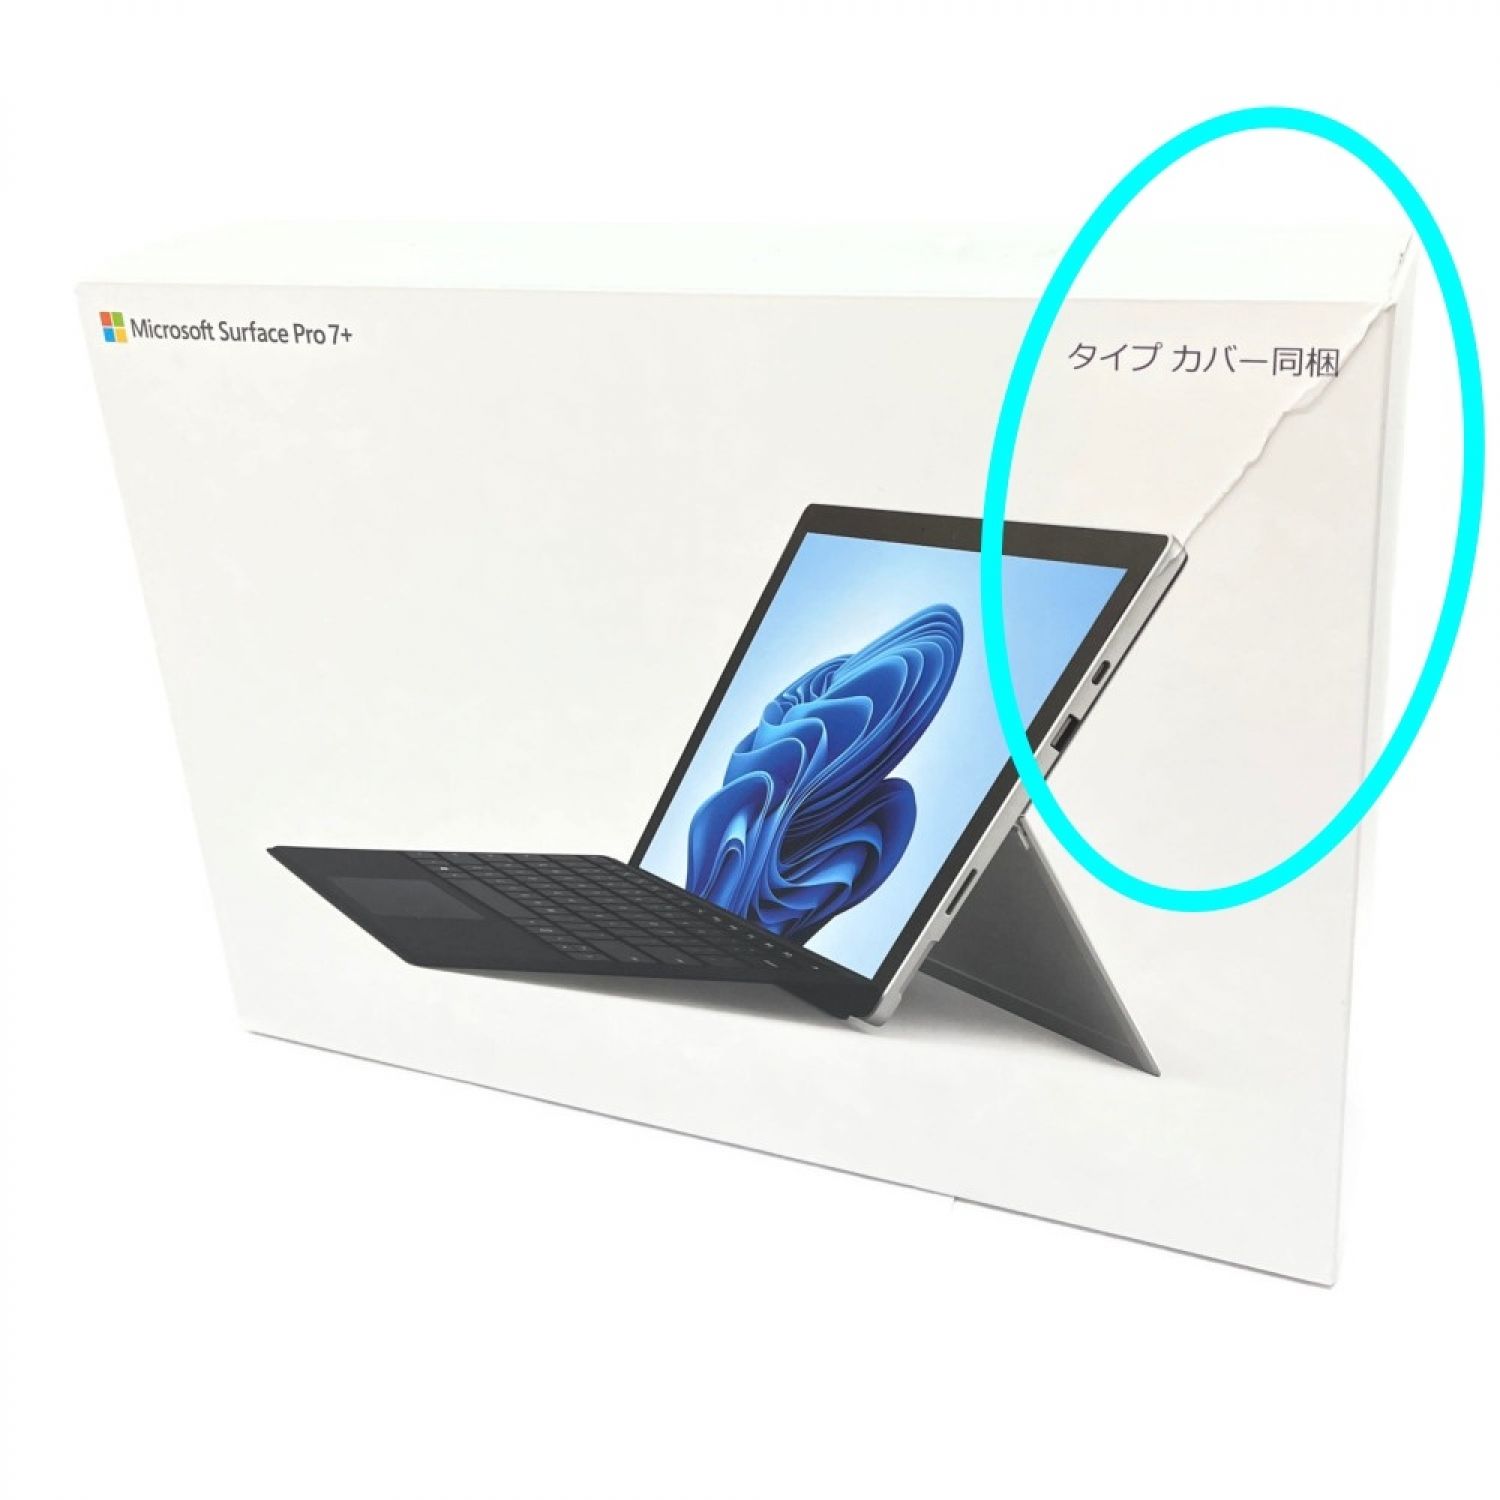 【箱付き】マイクロソフト Surface Pro 128GB、タイプカバー付き